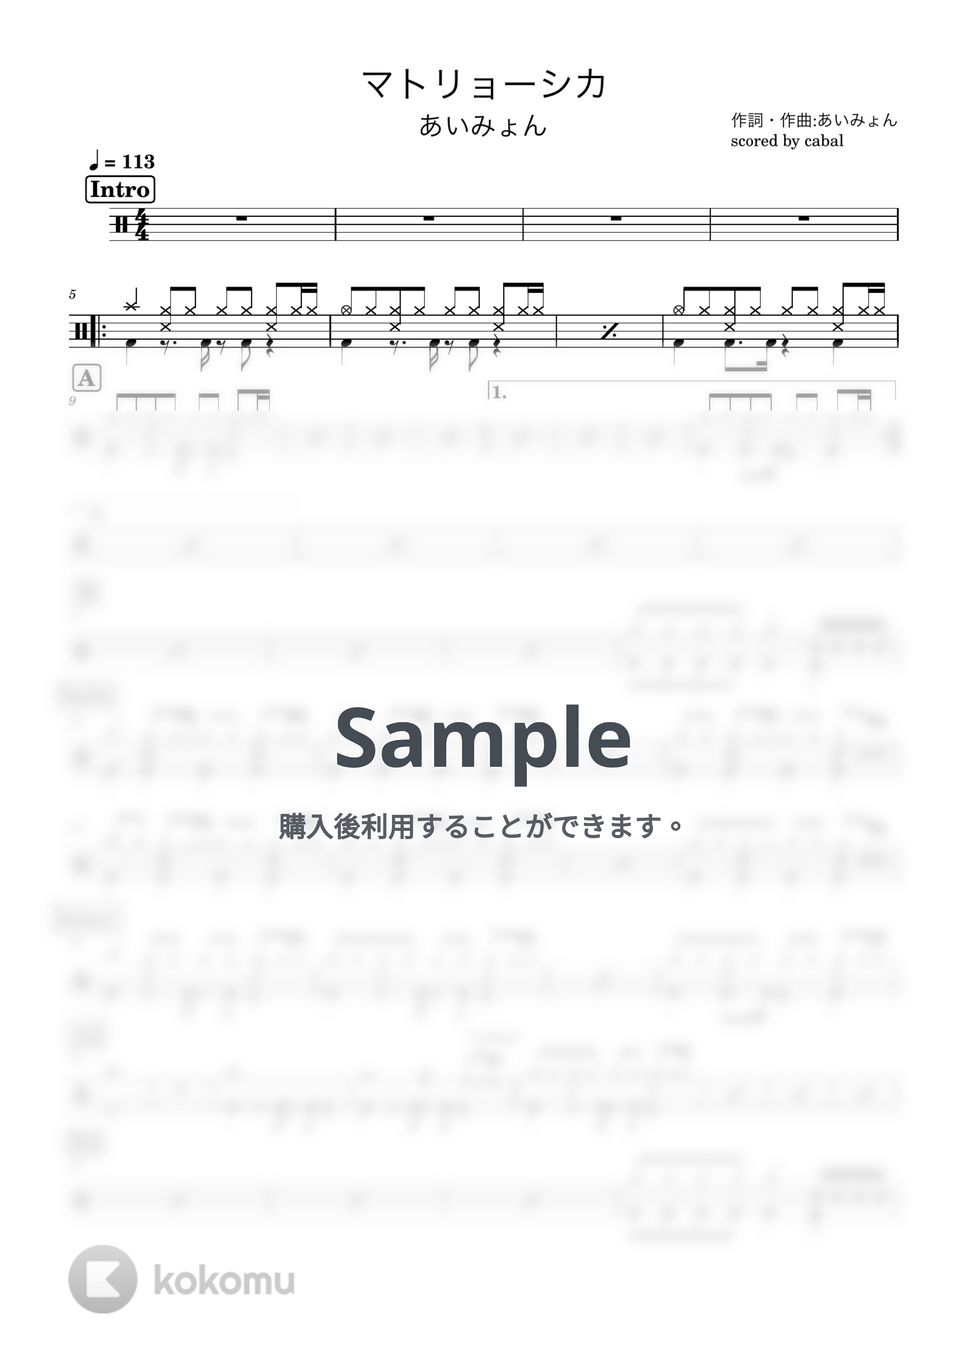 あいみょん - マトリョーシカ (ドラム譜面) by cabal